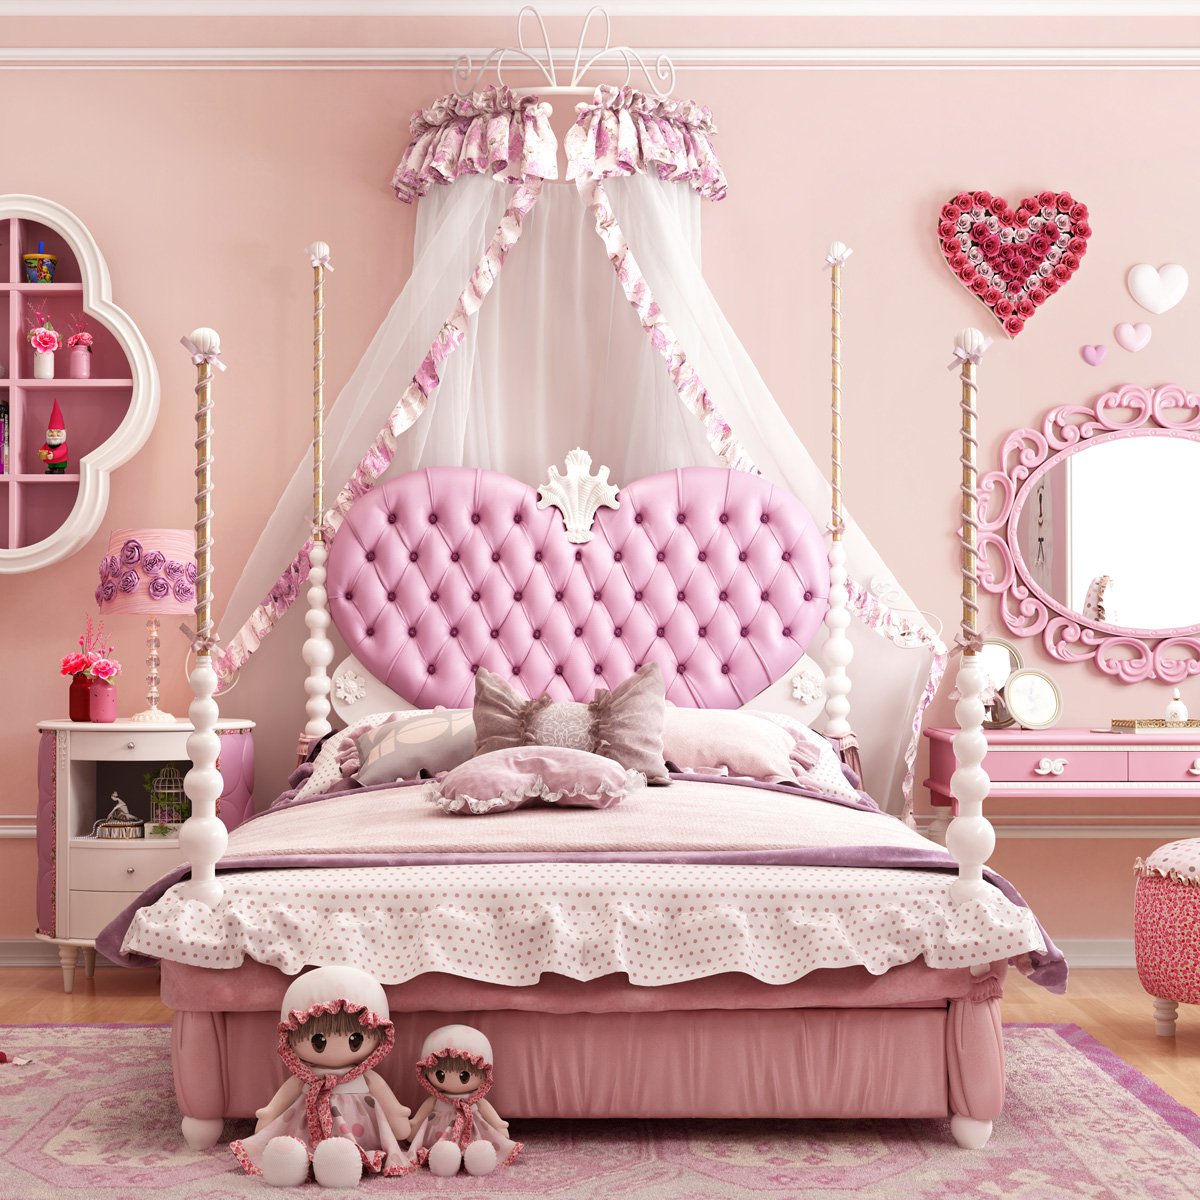 爆款高端贵族粉色公主床套房 双人床 婚床实木床欧式床欧式家具实木床